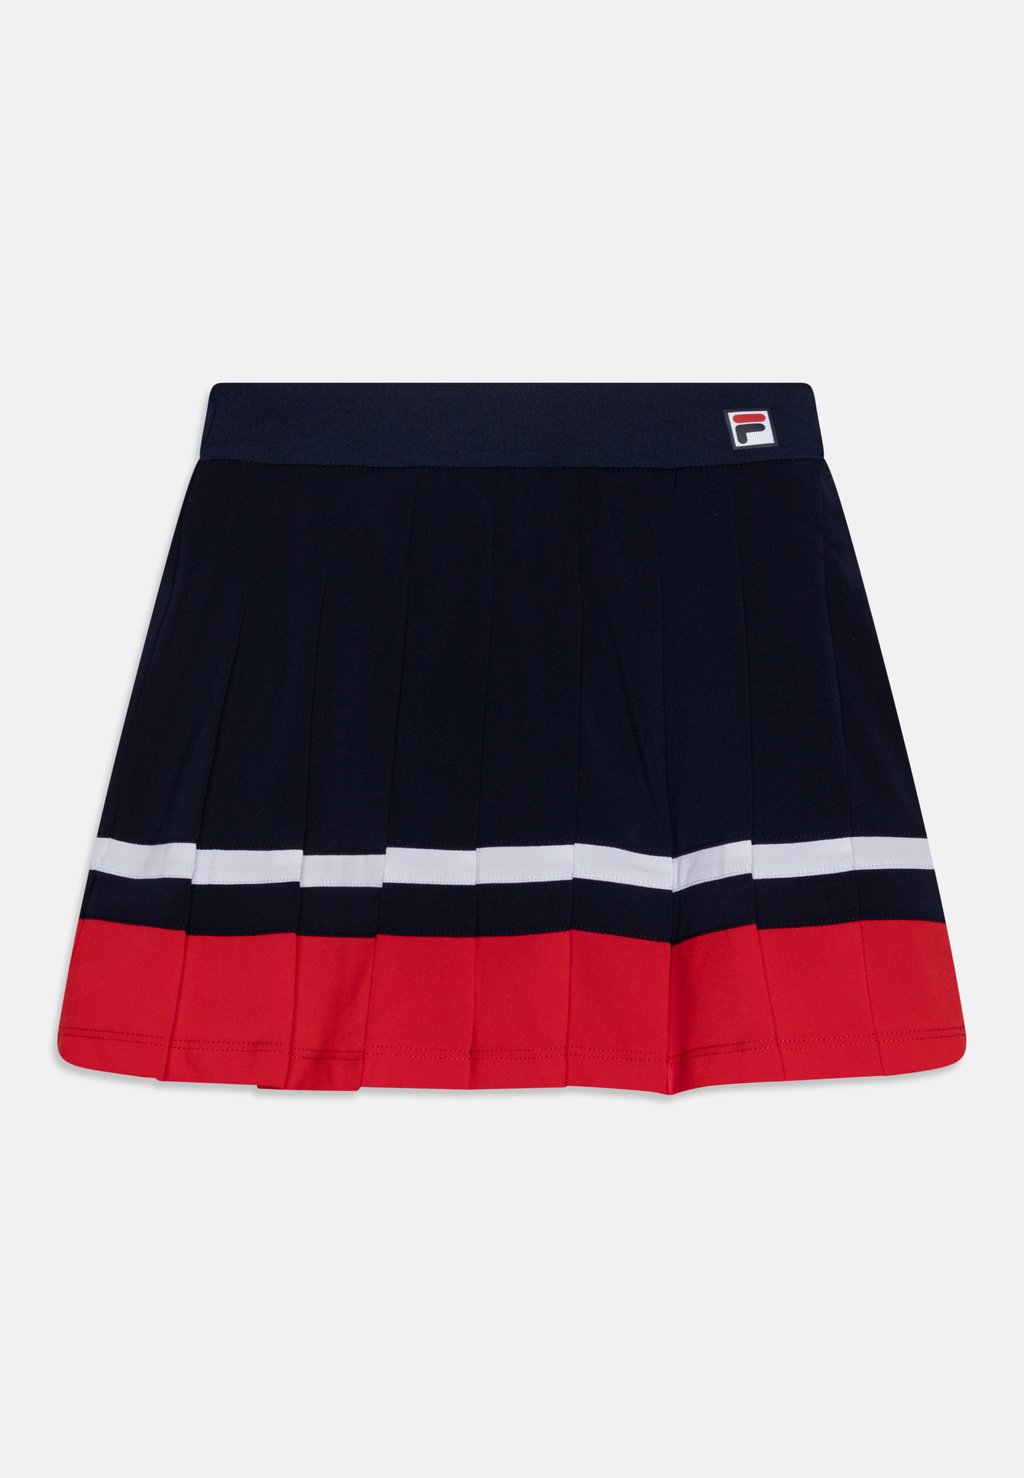 Спортивная юбка SKORT SABINE GIRLS Fila, цвет navy/red